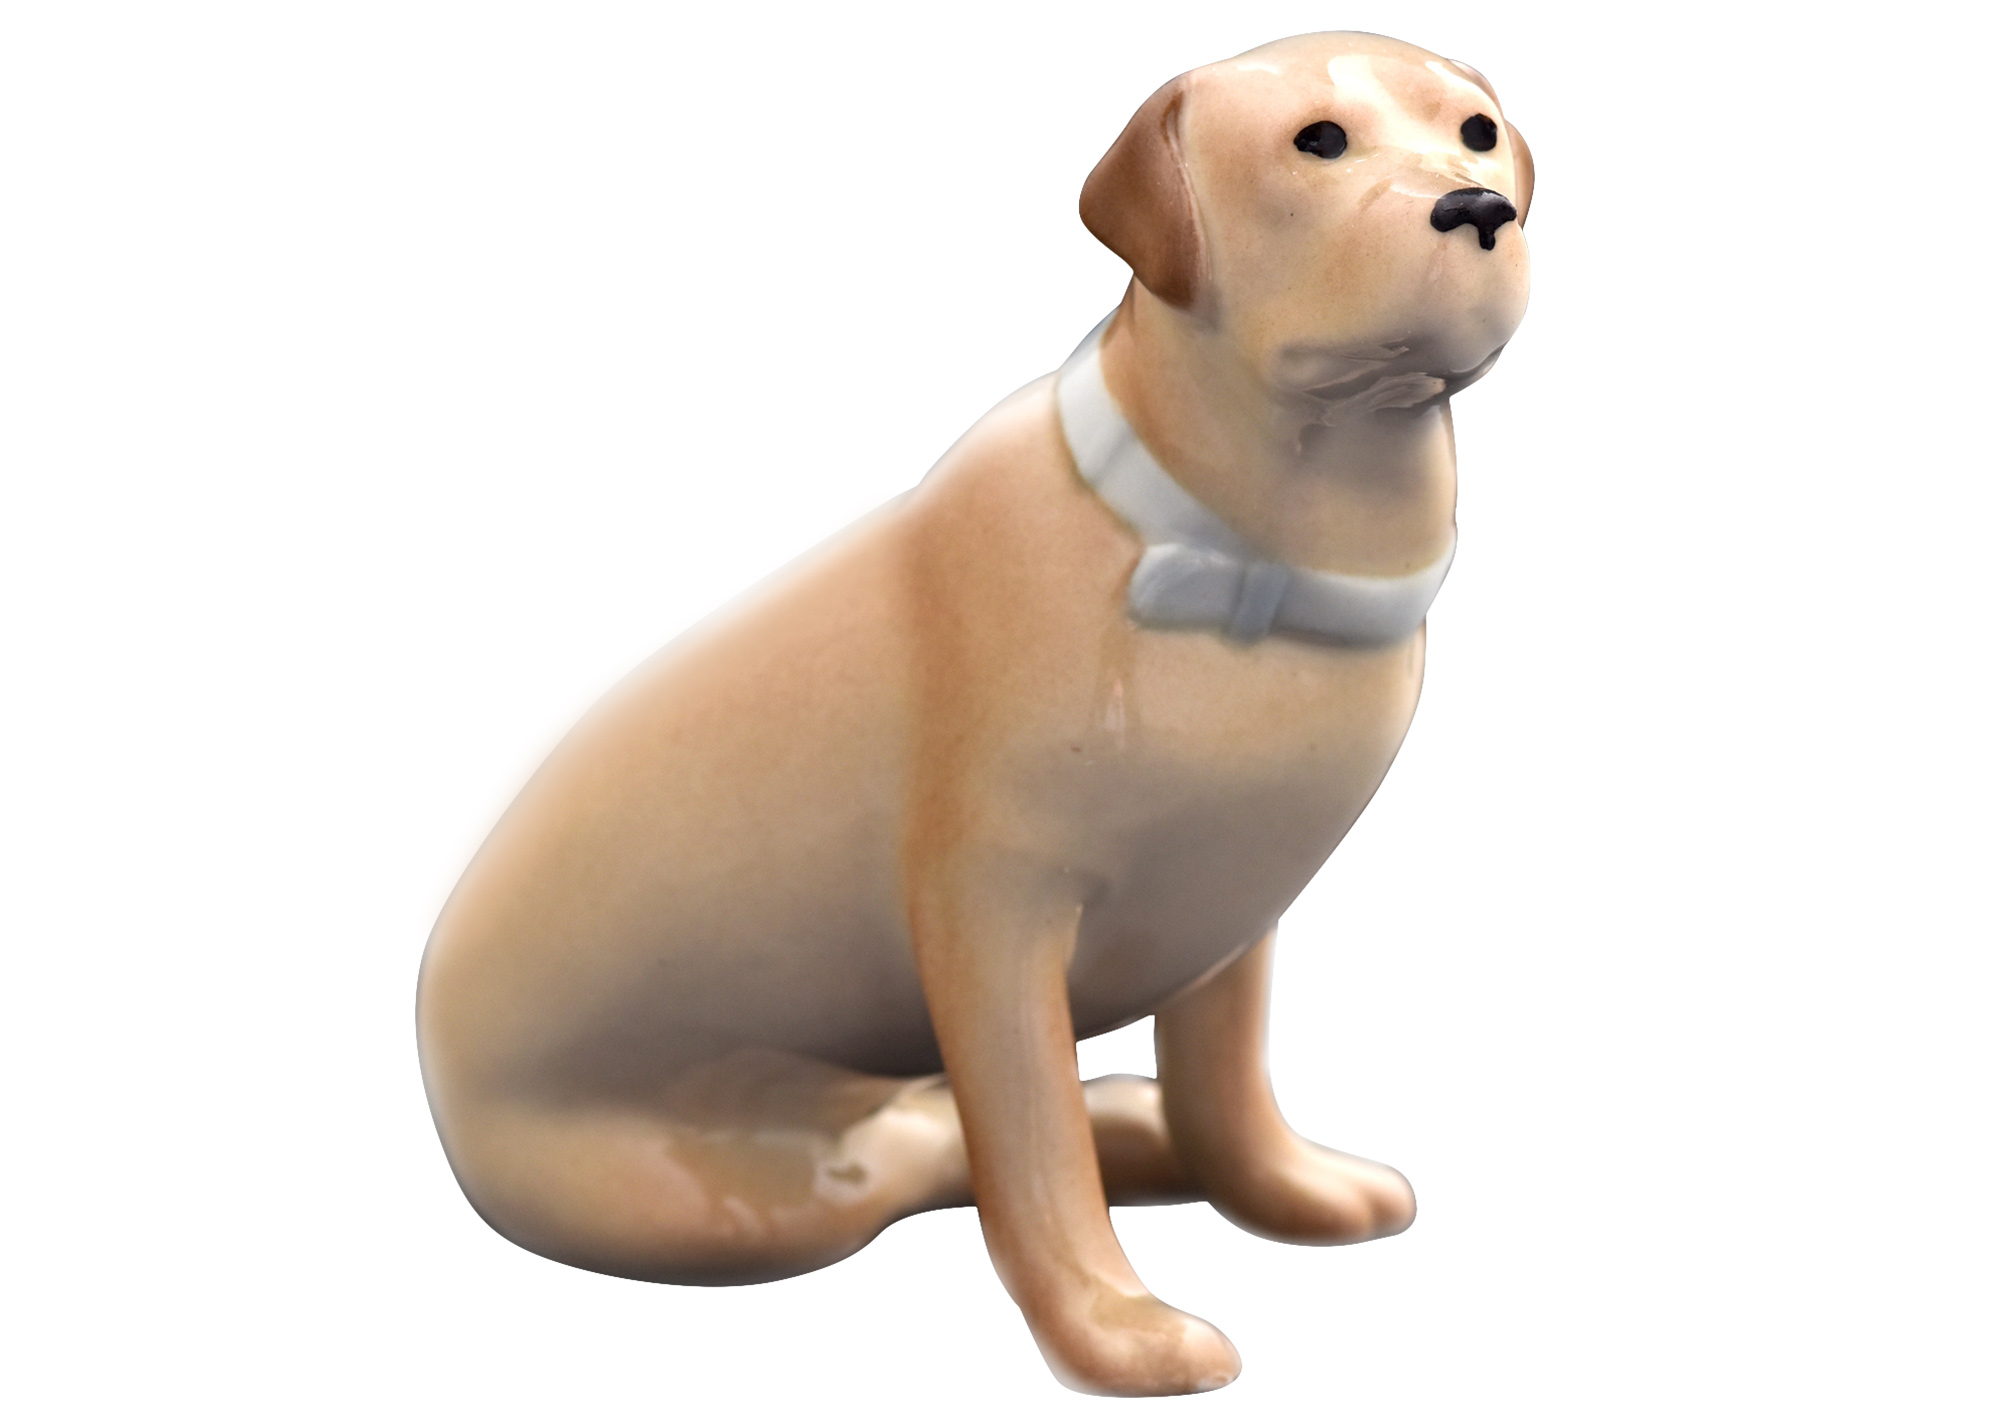 Buy Fawn Labrador Retriever Porcelain Figurine 3.5" at GoldenCockerel.com